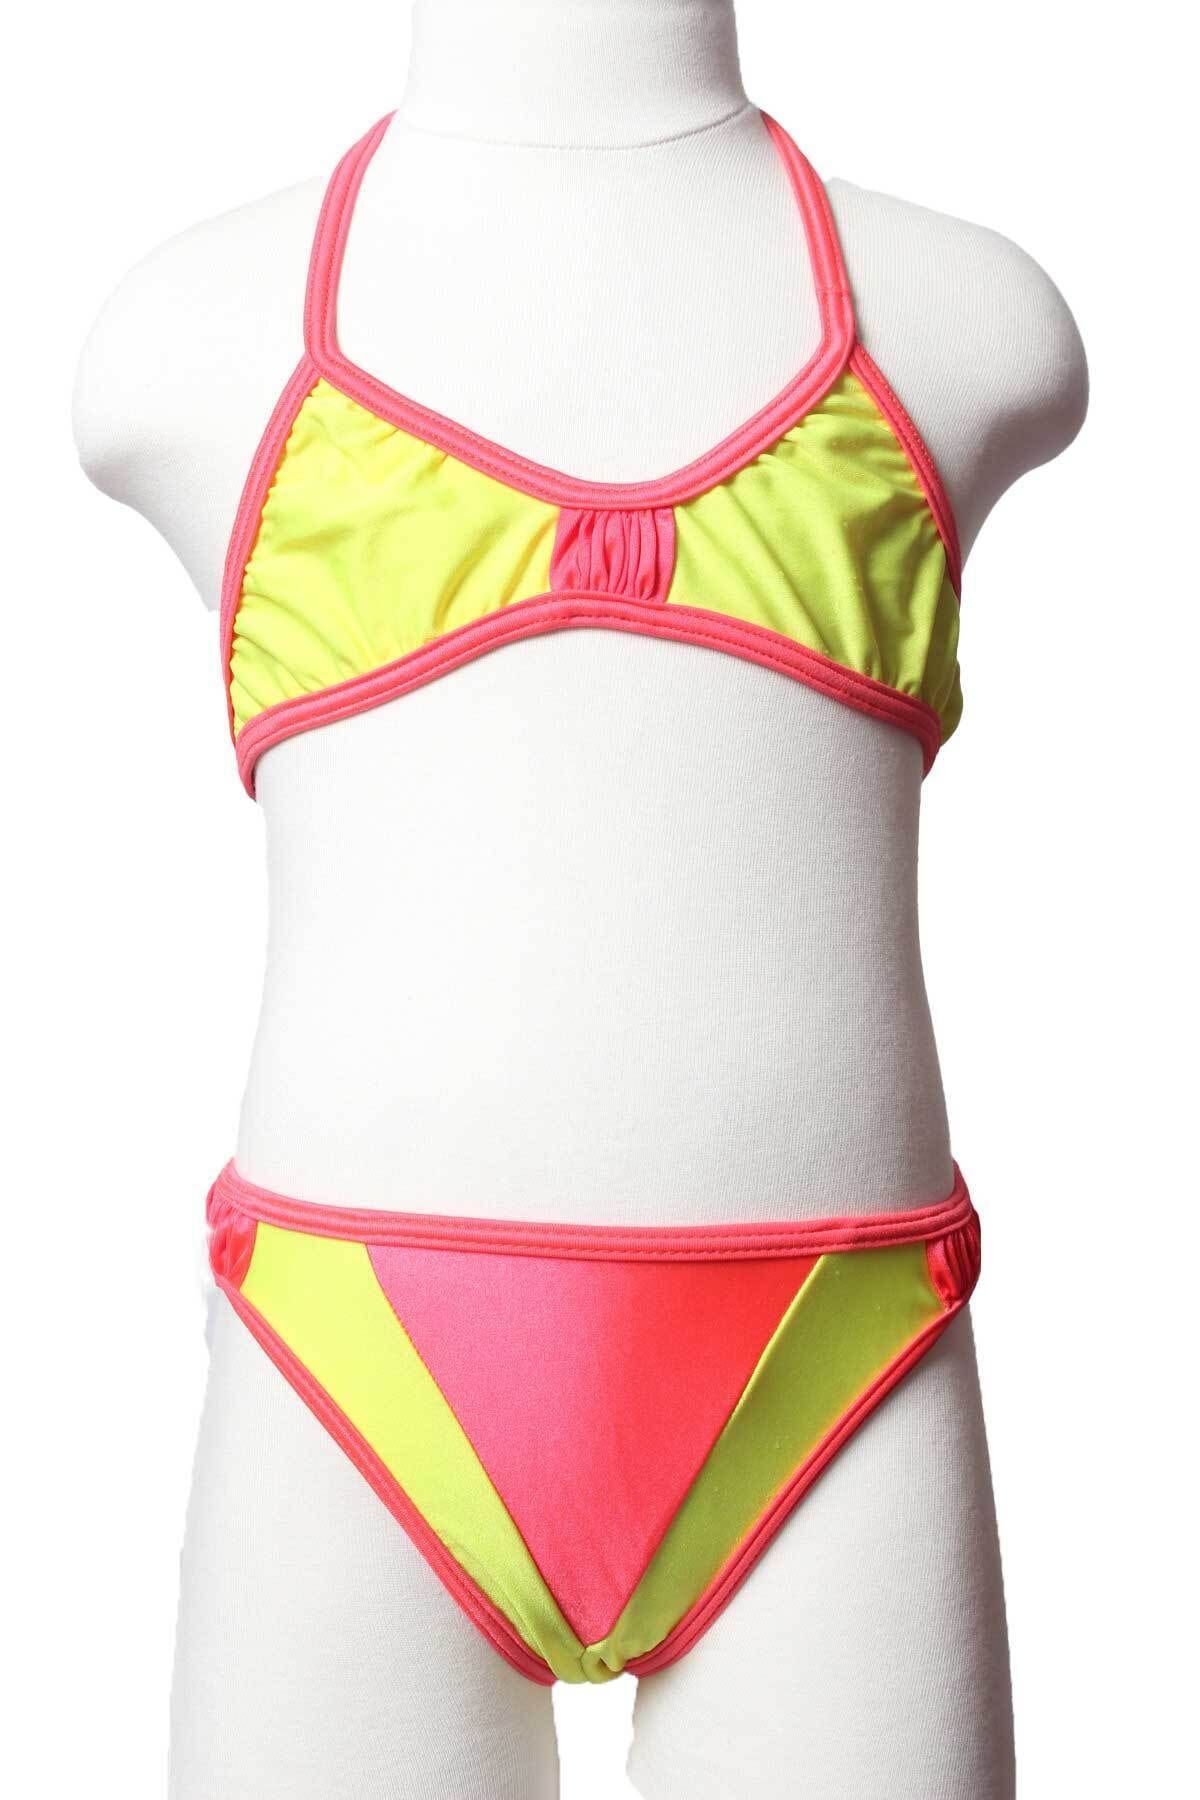 Sude Ayl Kız Çocuk Sarı Üçgen Model Boyundan Bağlamalı Alt Üst Düz Bikini Takım 95